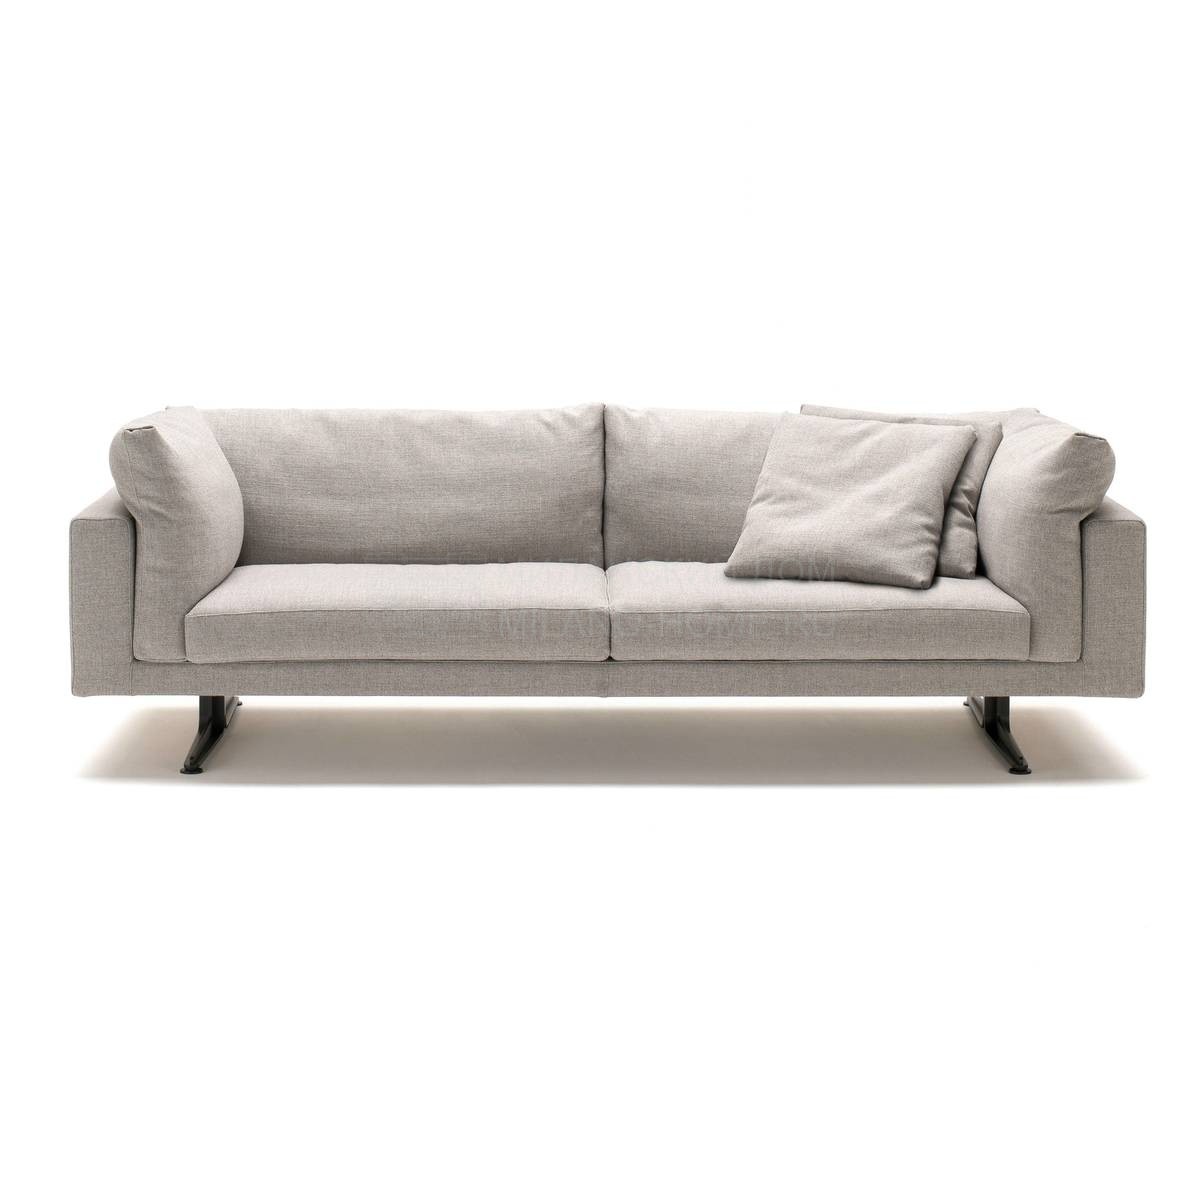 Прямой диван Floyd-Hi sofa из Италии фабрики LIVING DIVANI